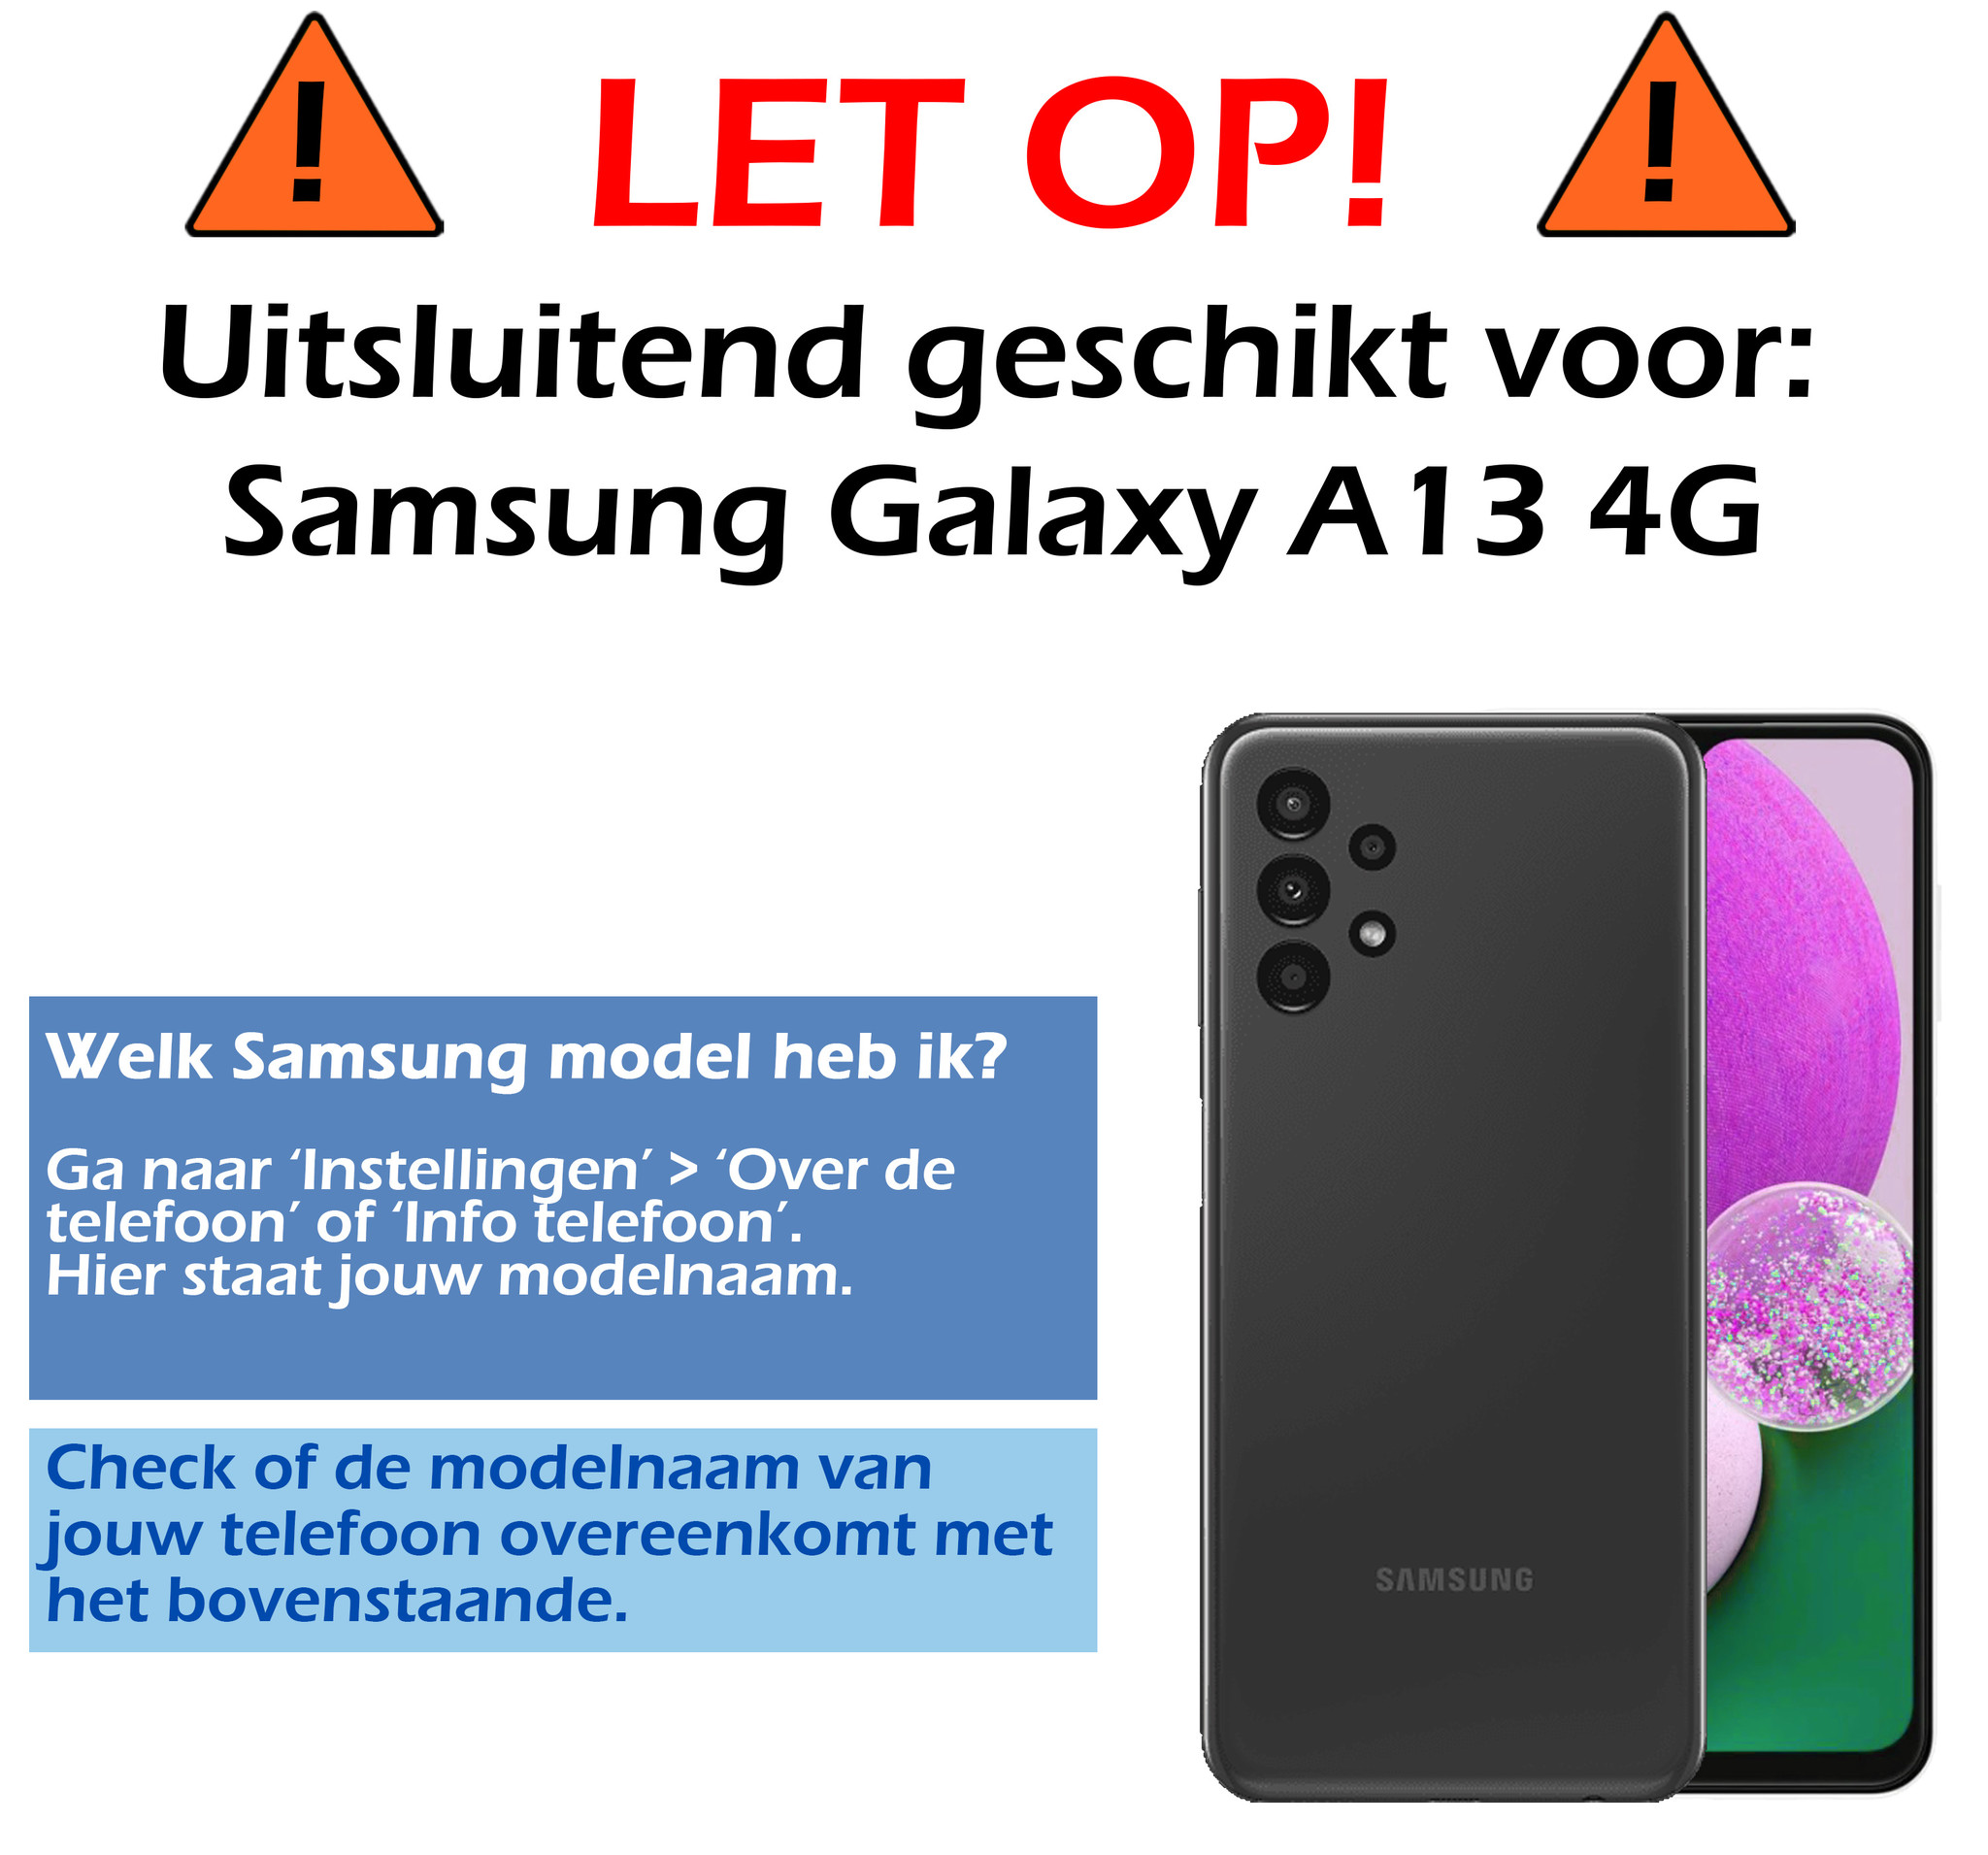 Samsung Galaxy A13 4G Hoesje Siliconen - Samsung Galaxy Galaxy A13 4G Hoesje Rood Case - Samsung Galaxy Galaxy A13 4G Cover Siliconen Back Cover - Rood